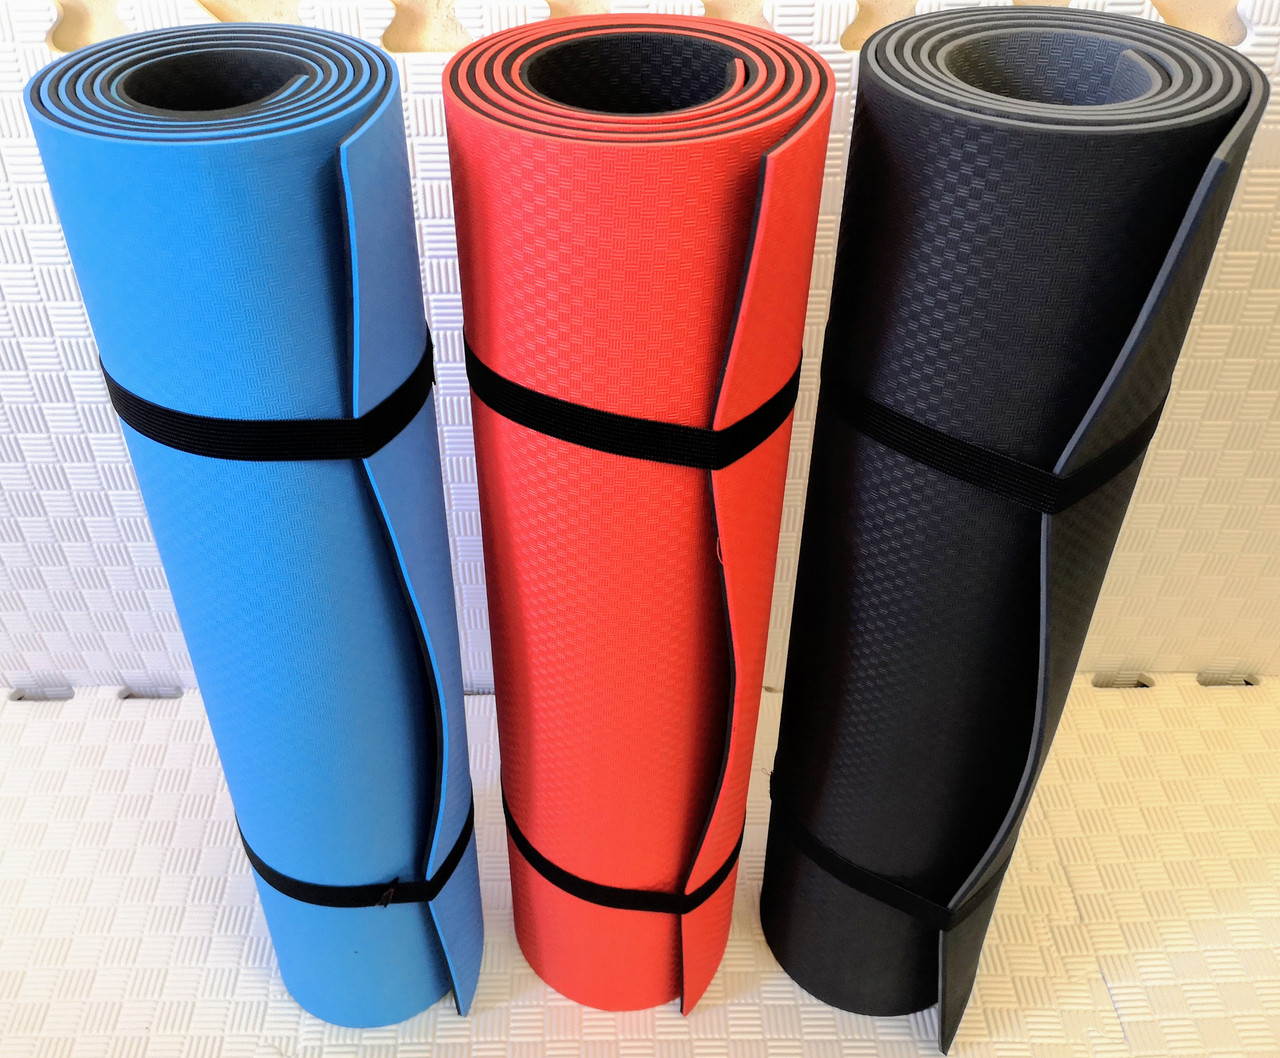 Нерозривний дуже щільний спортивний йога-килимок (йога-мат) "Eva-Sport" для занять йогою,фітнесом, пілатесом.